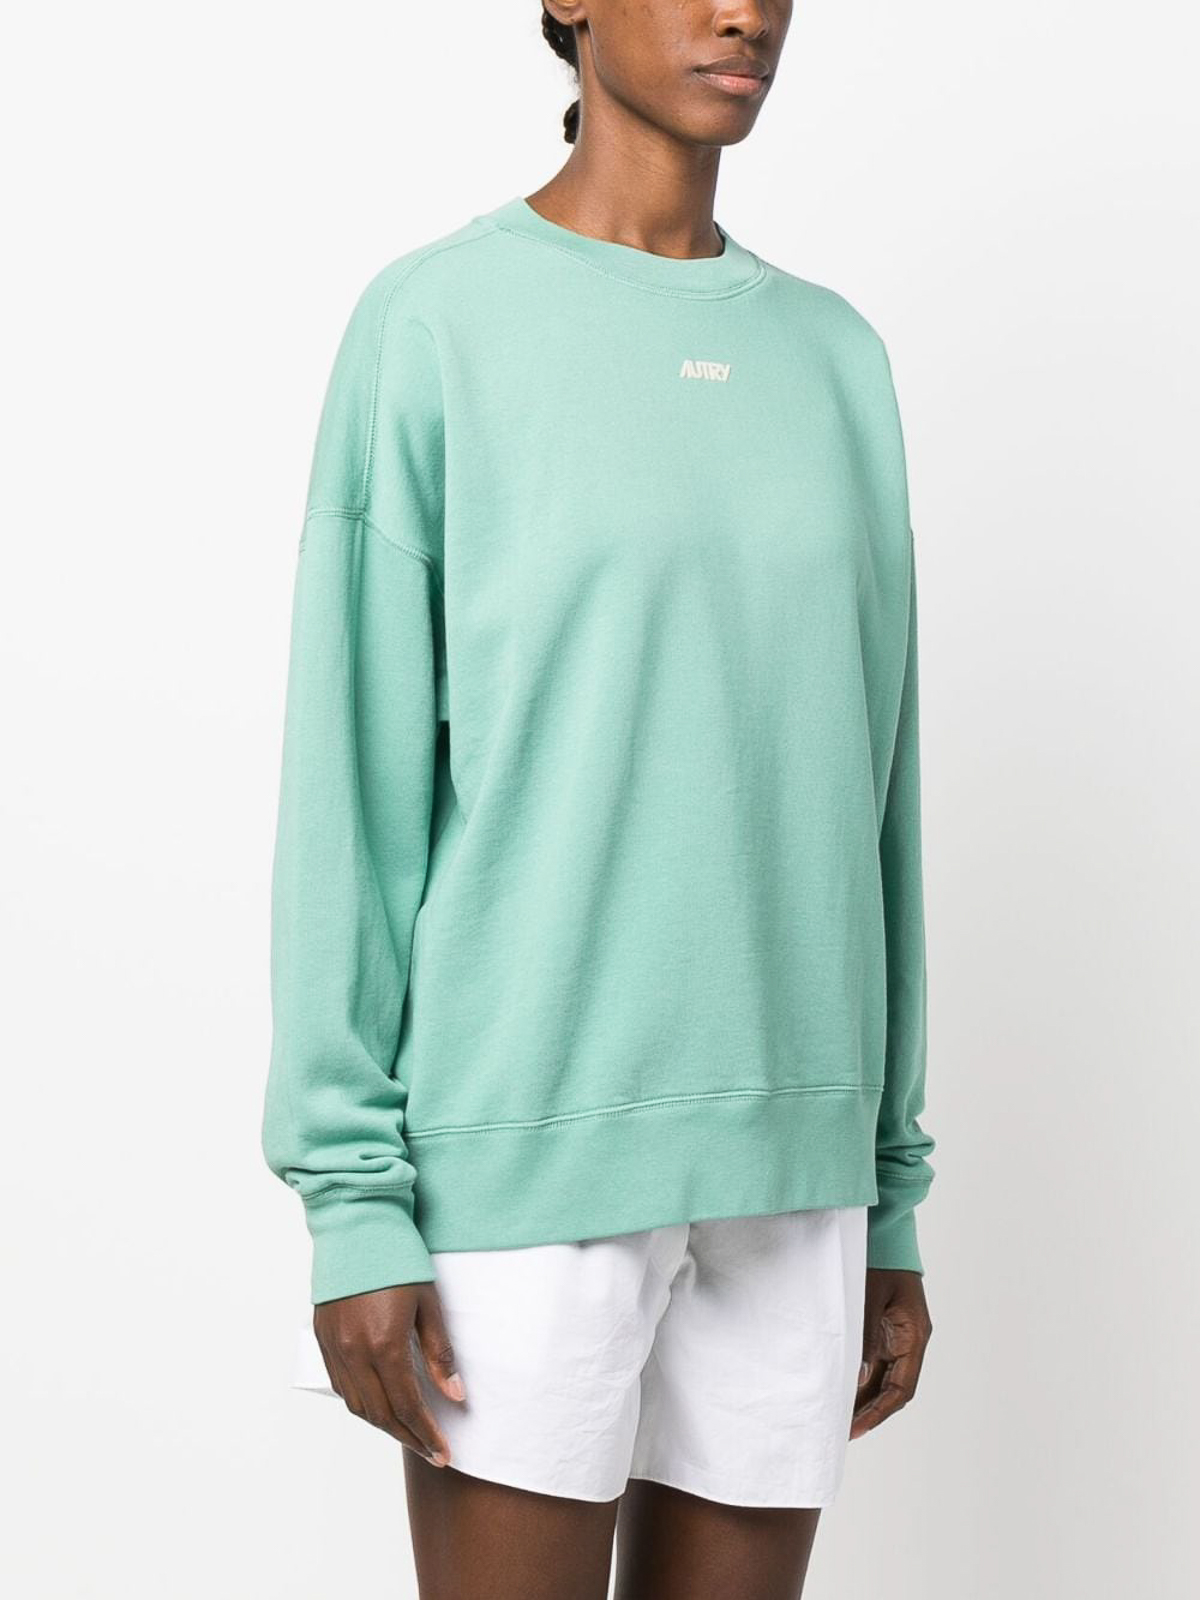 Shop Autry `bicolor` Crew-neck Sweatshirt In Multicolour